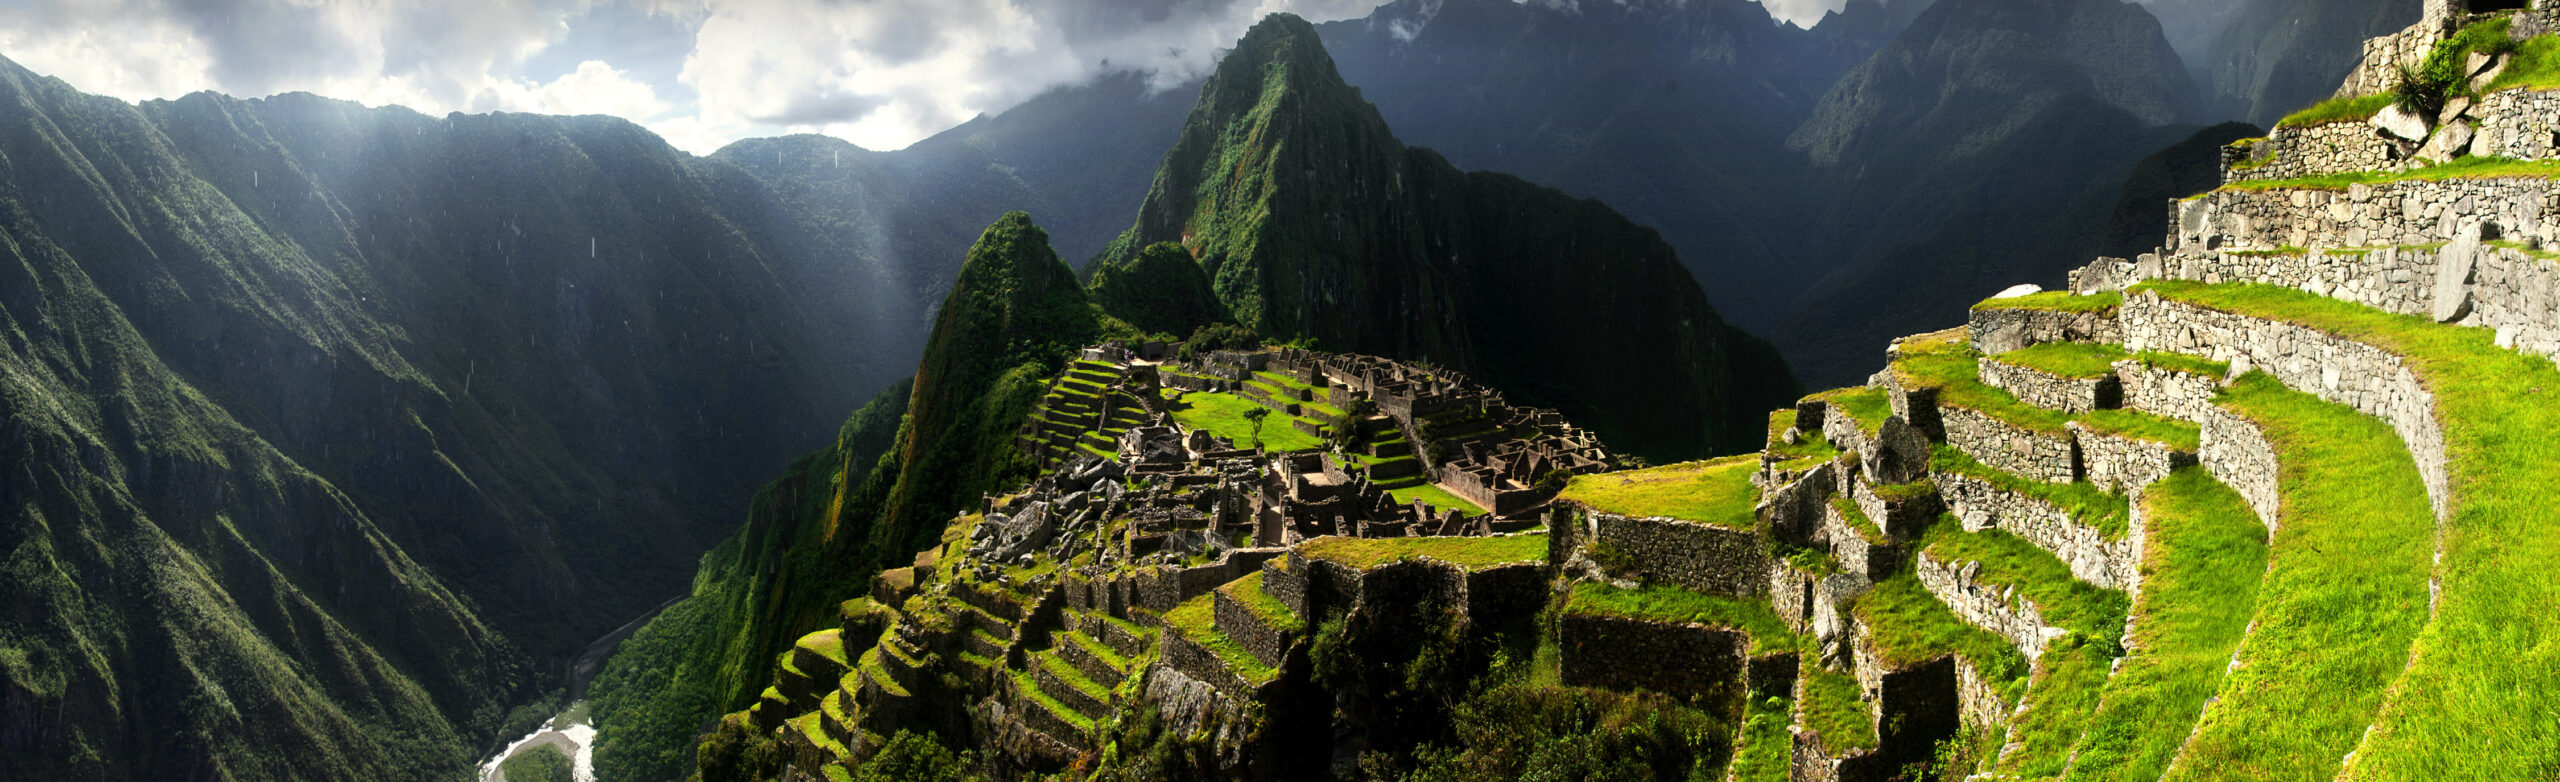 Best Time To Visit Machu Picchu - Machu Picchu Inca mountainside